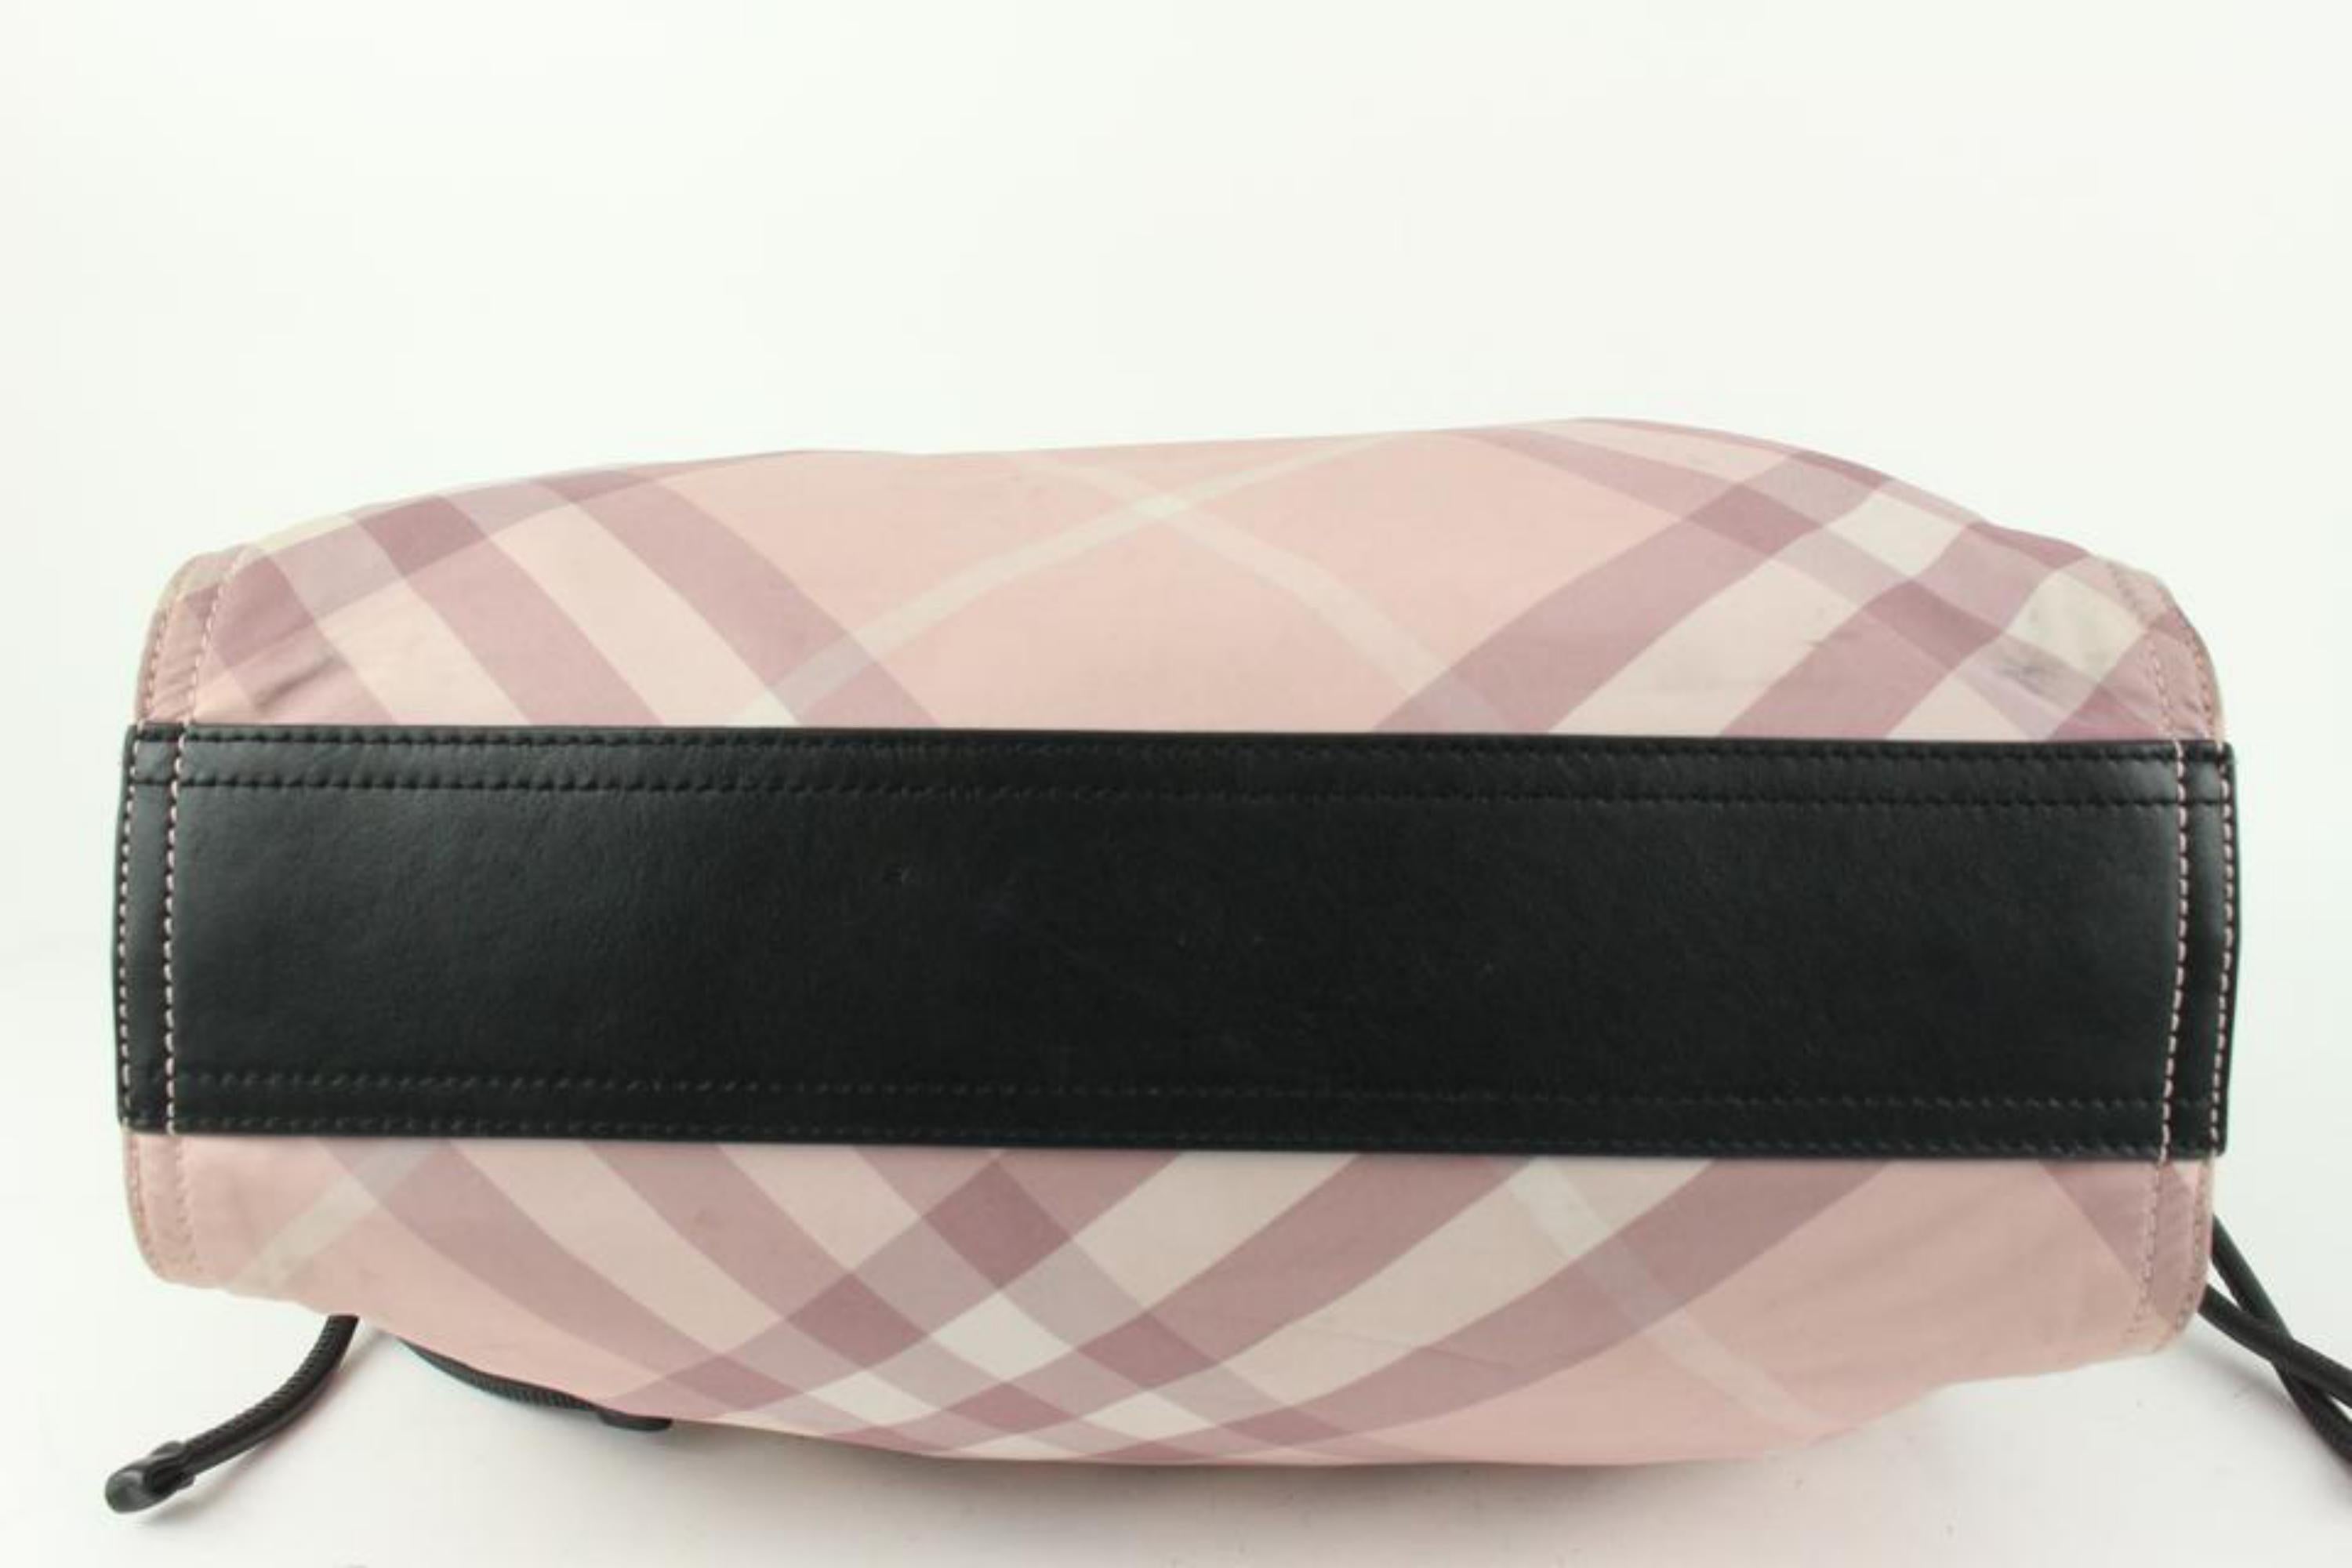 Burberry Pink Nova Check Shopper Tote Bag 928bur79 For Sale 1